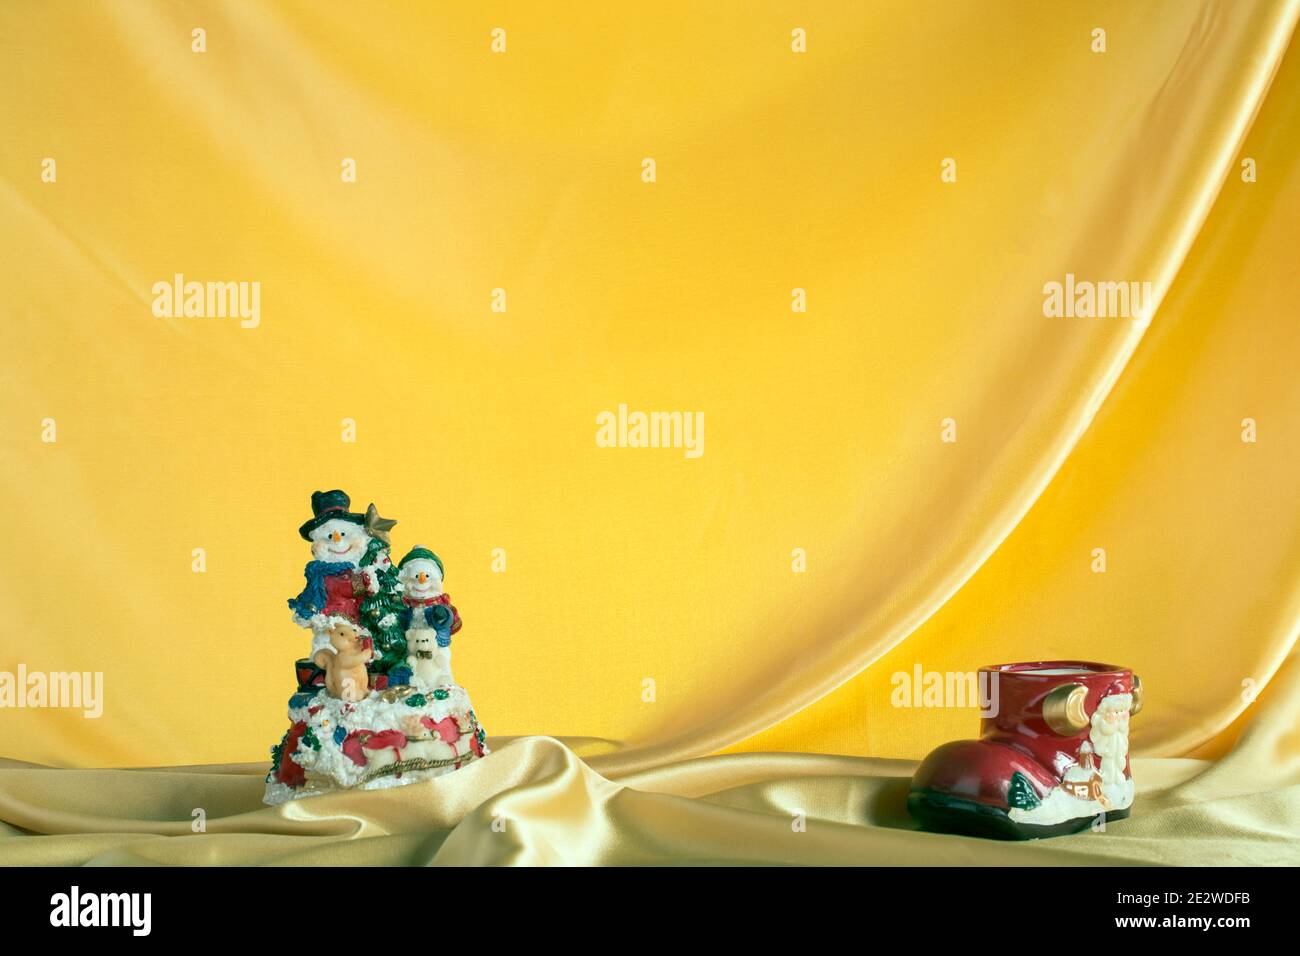 Noël composition de jouets rétro pour Noël. Un tissu de doublure jaune est utilisé comme arrière-plan. En 2019, le jaune apporte Bonne chance. Banque D'Images